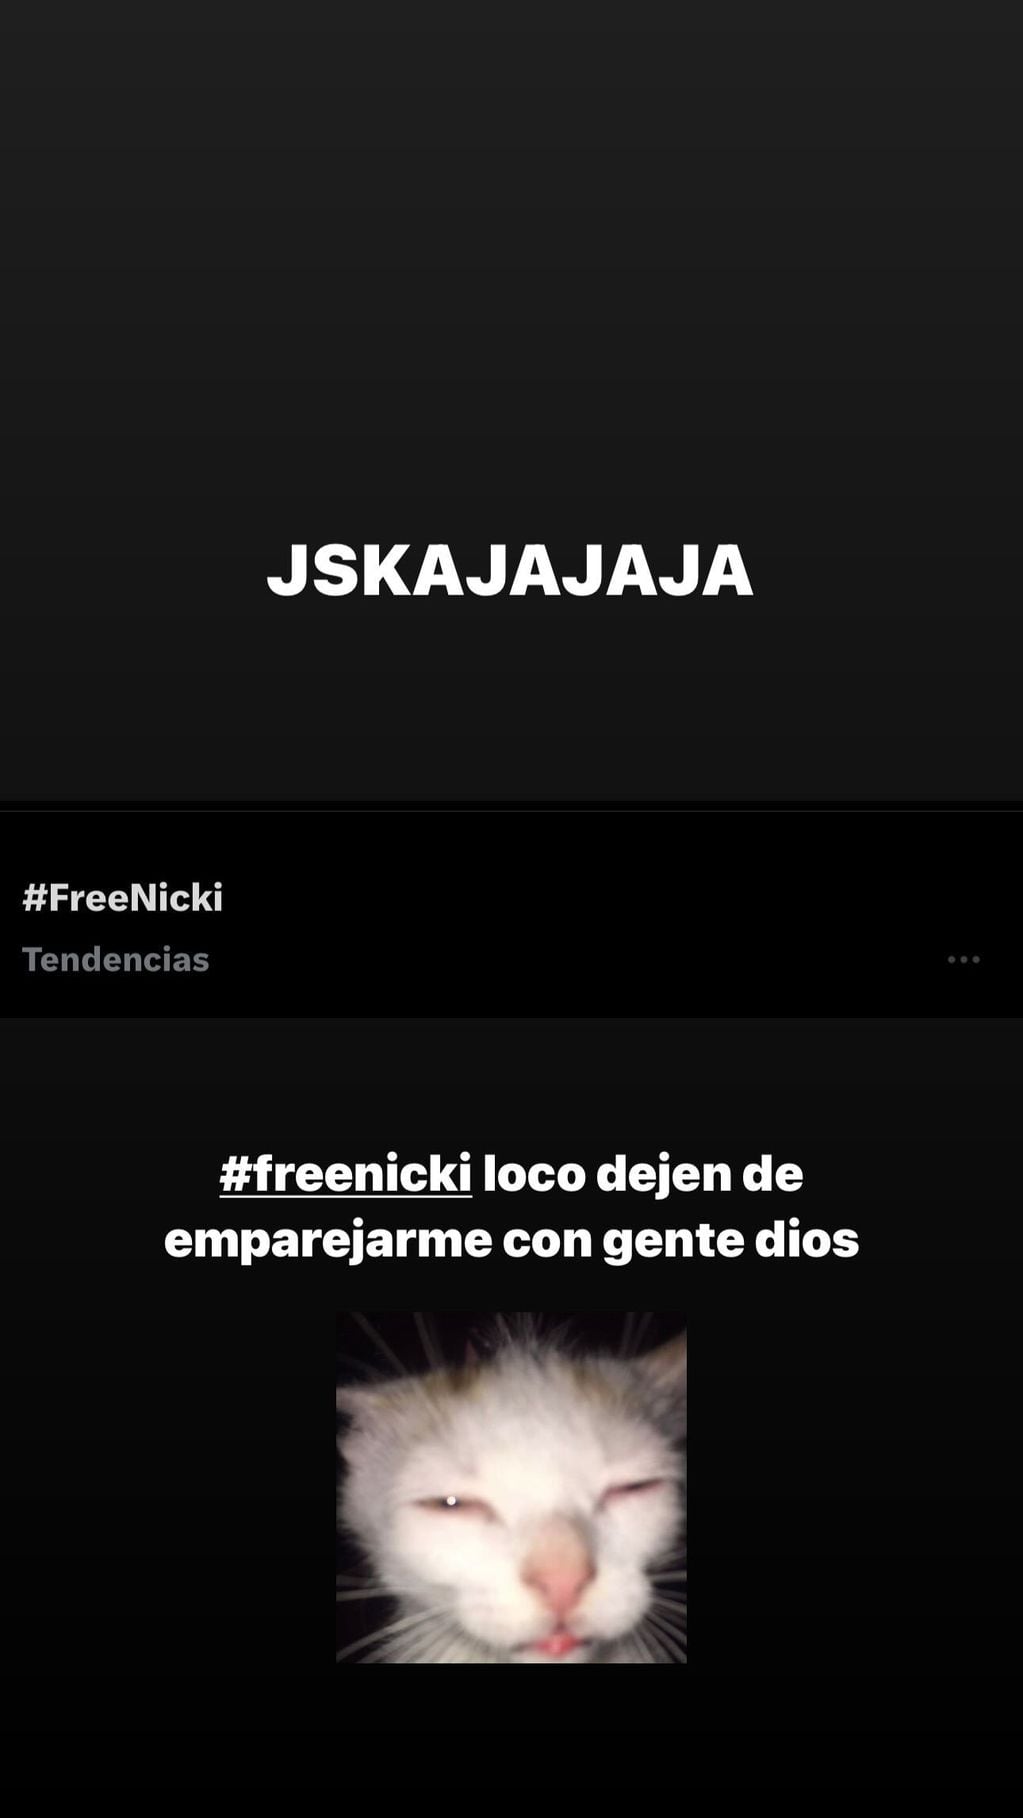 Nicki Nicole publicó un meme para rechazar los rumores de romance con el hashtag "Free Nicki".